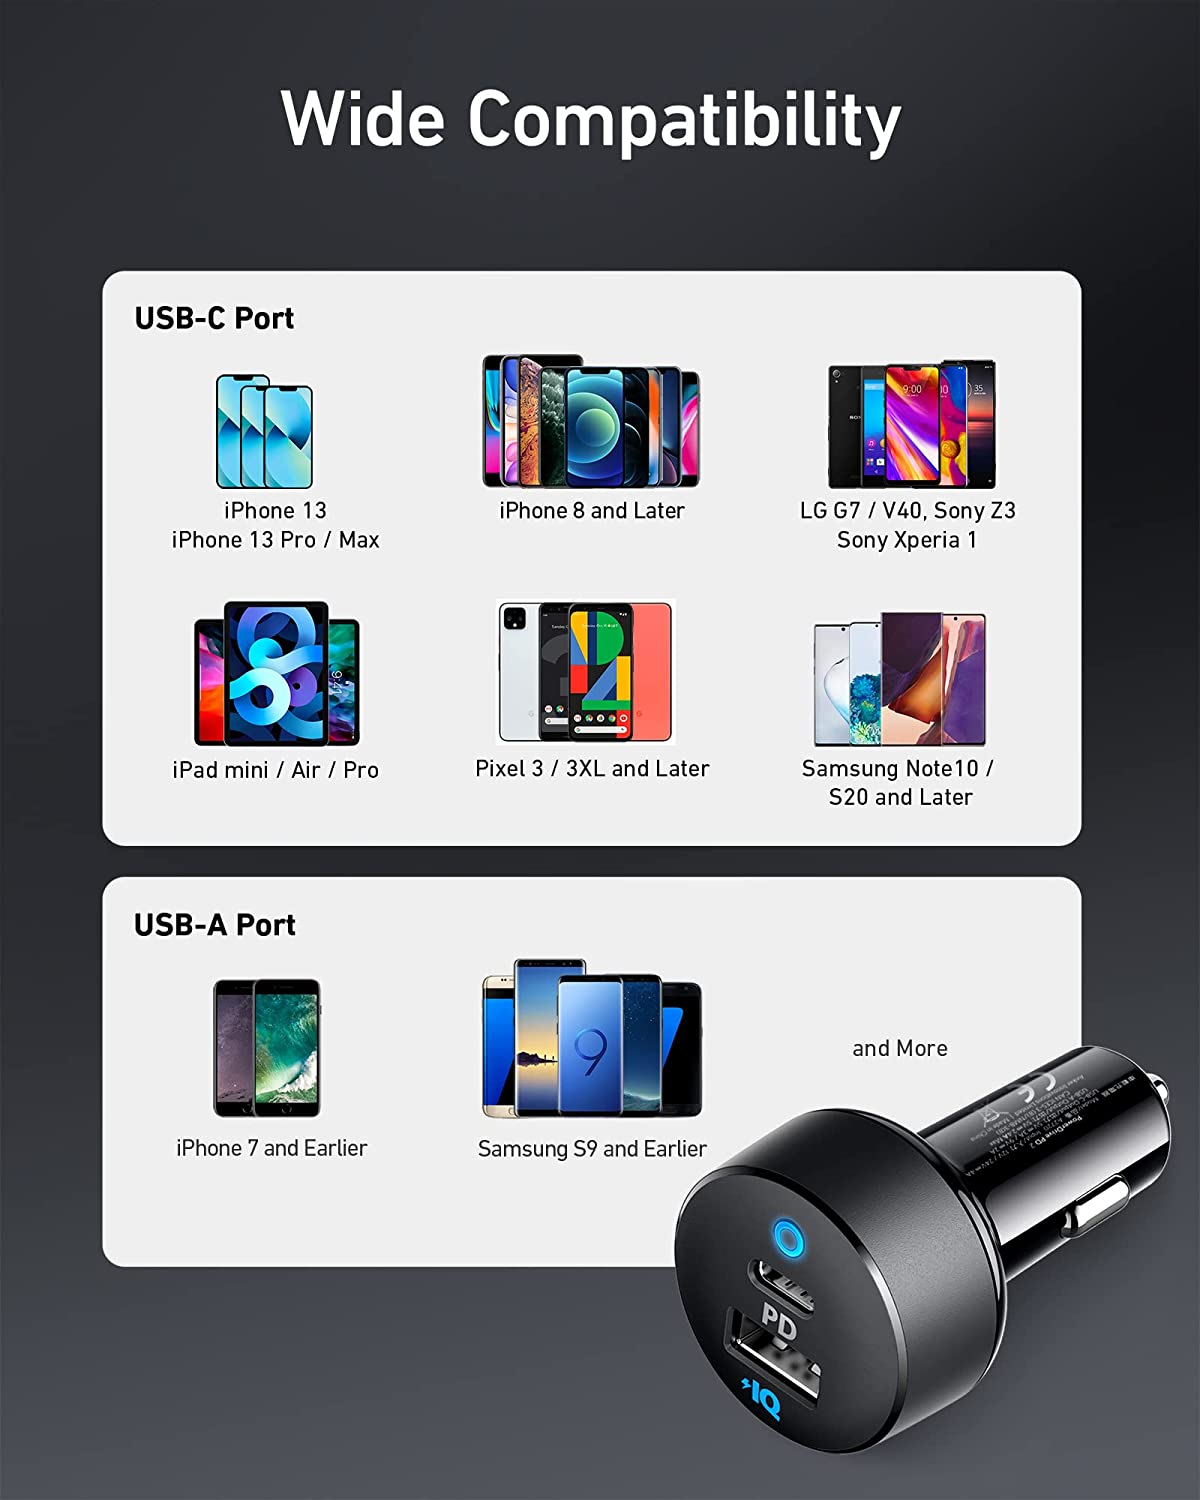 Anker Chargeur de voiture USB C, 32 W 2 ports compacts de type C avec alimentation 20 W et PowerIQ 12 W, PowerDrive PD 2 avec LED pour iPad Pro, iPhone XS/Max/XR/X/8/7, Pixel 3/2/ XL et Plus